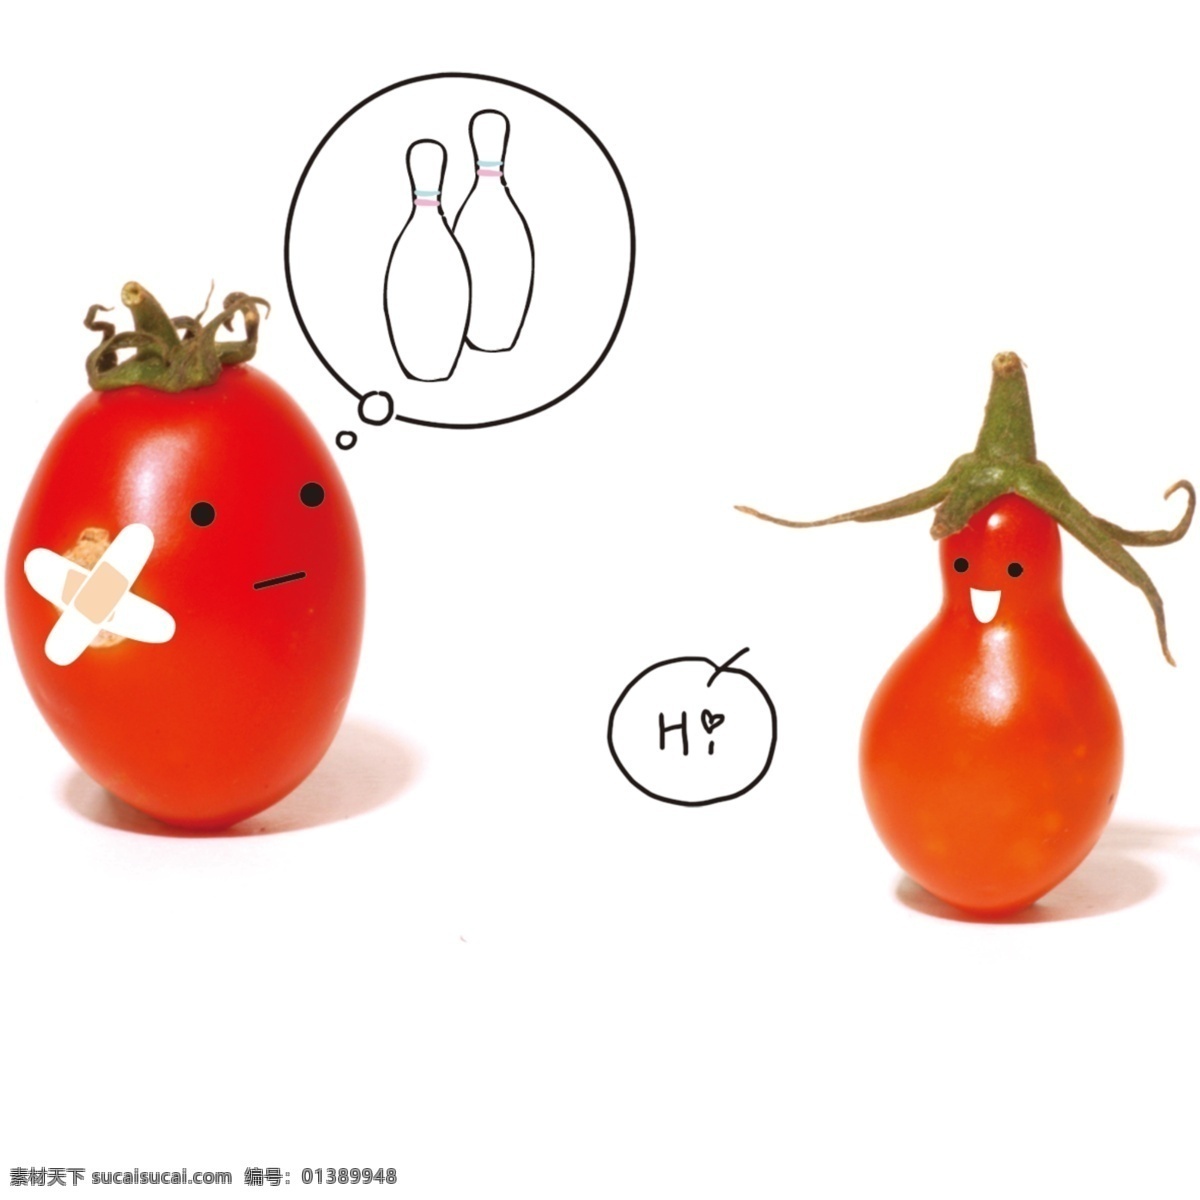 分层 表情 创意 番茄 分层图 可爱 日本风格 蔬菜 西红柿 模板下载 创意蔬菜2 日本文字 综合 源文件 psd源文件